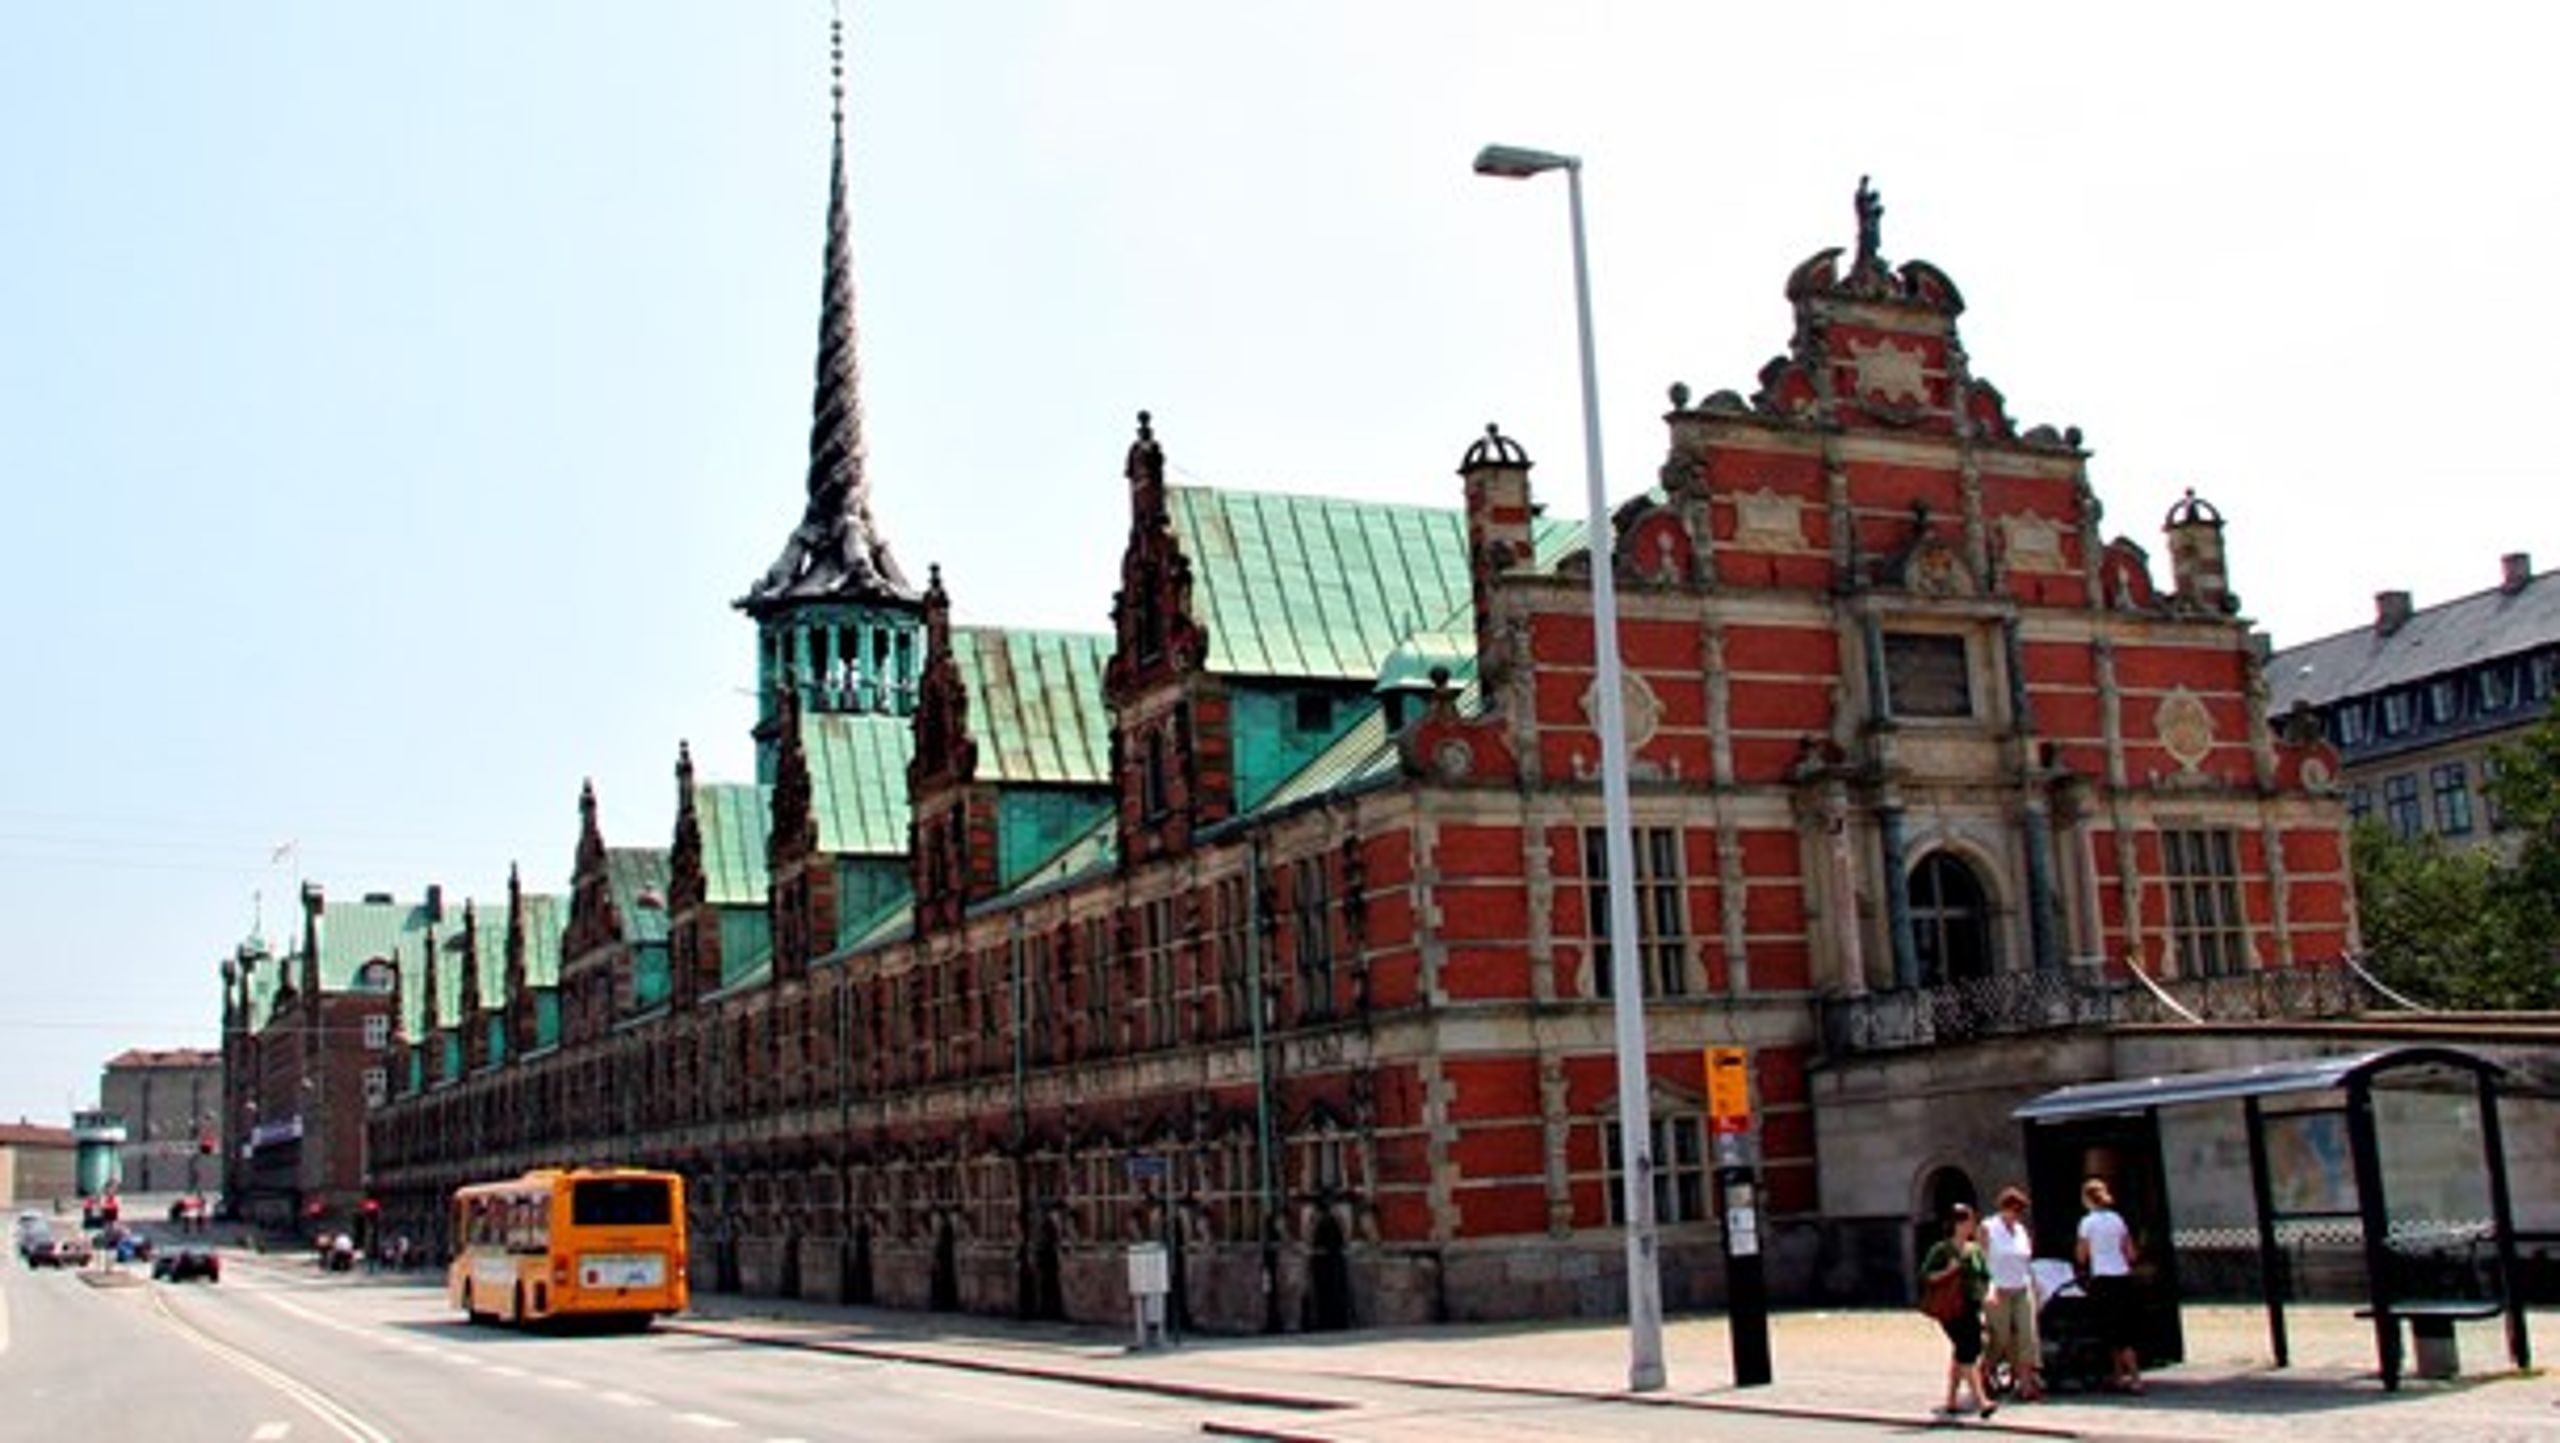 Her i den gamle børsbygning i København afholdes Civilsamfundets Fællesdag for første gang 2. oktober 2018.&nbsp;